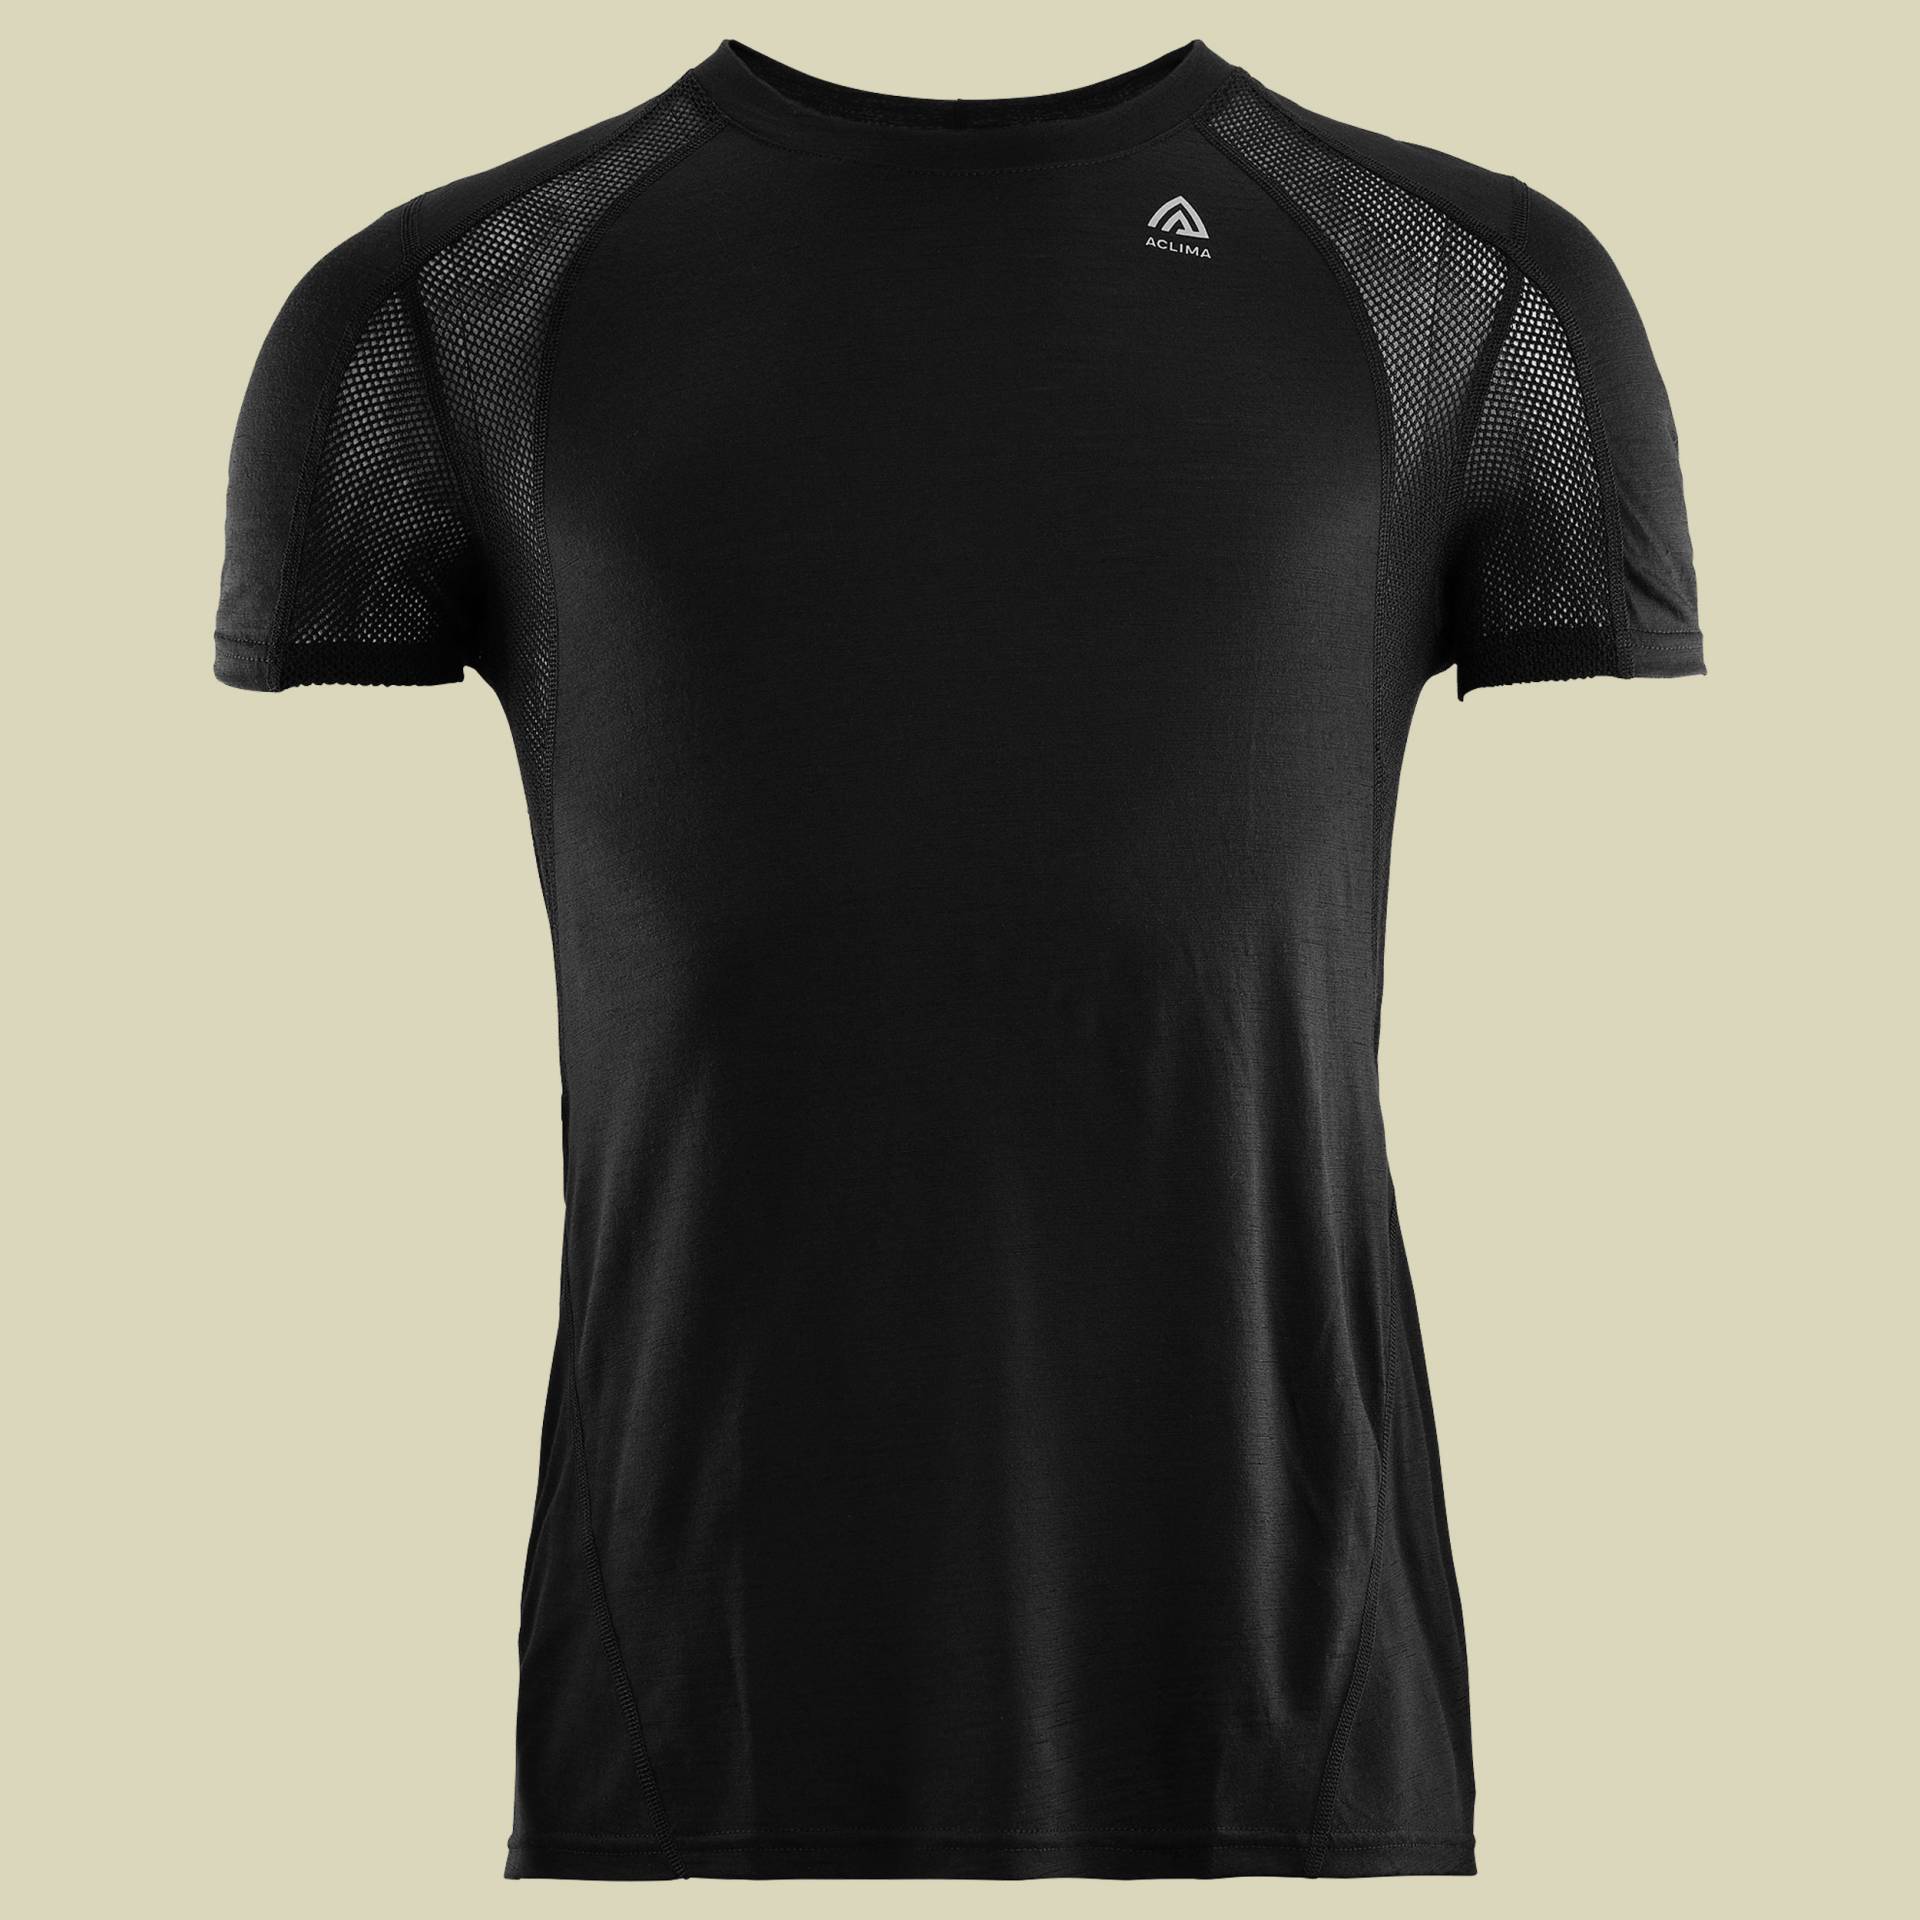 LightWool Sports T-Shirt Men schwarz L - jet black von aclima